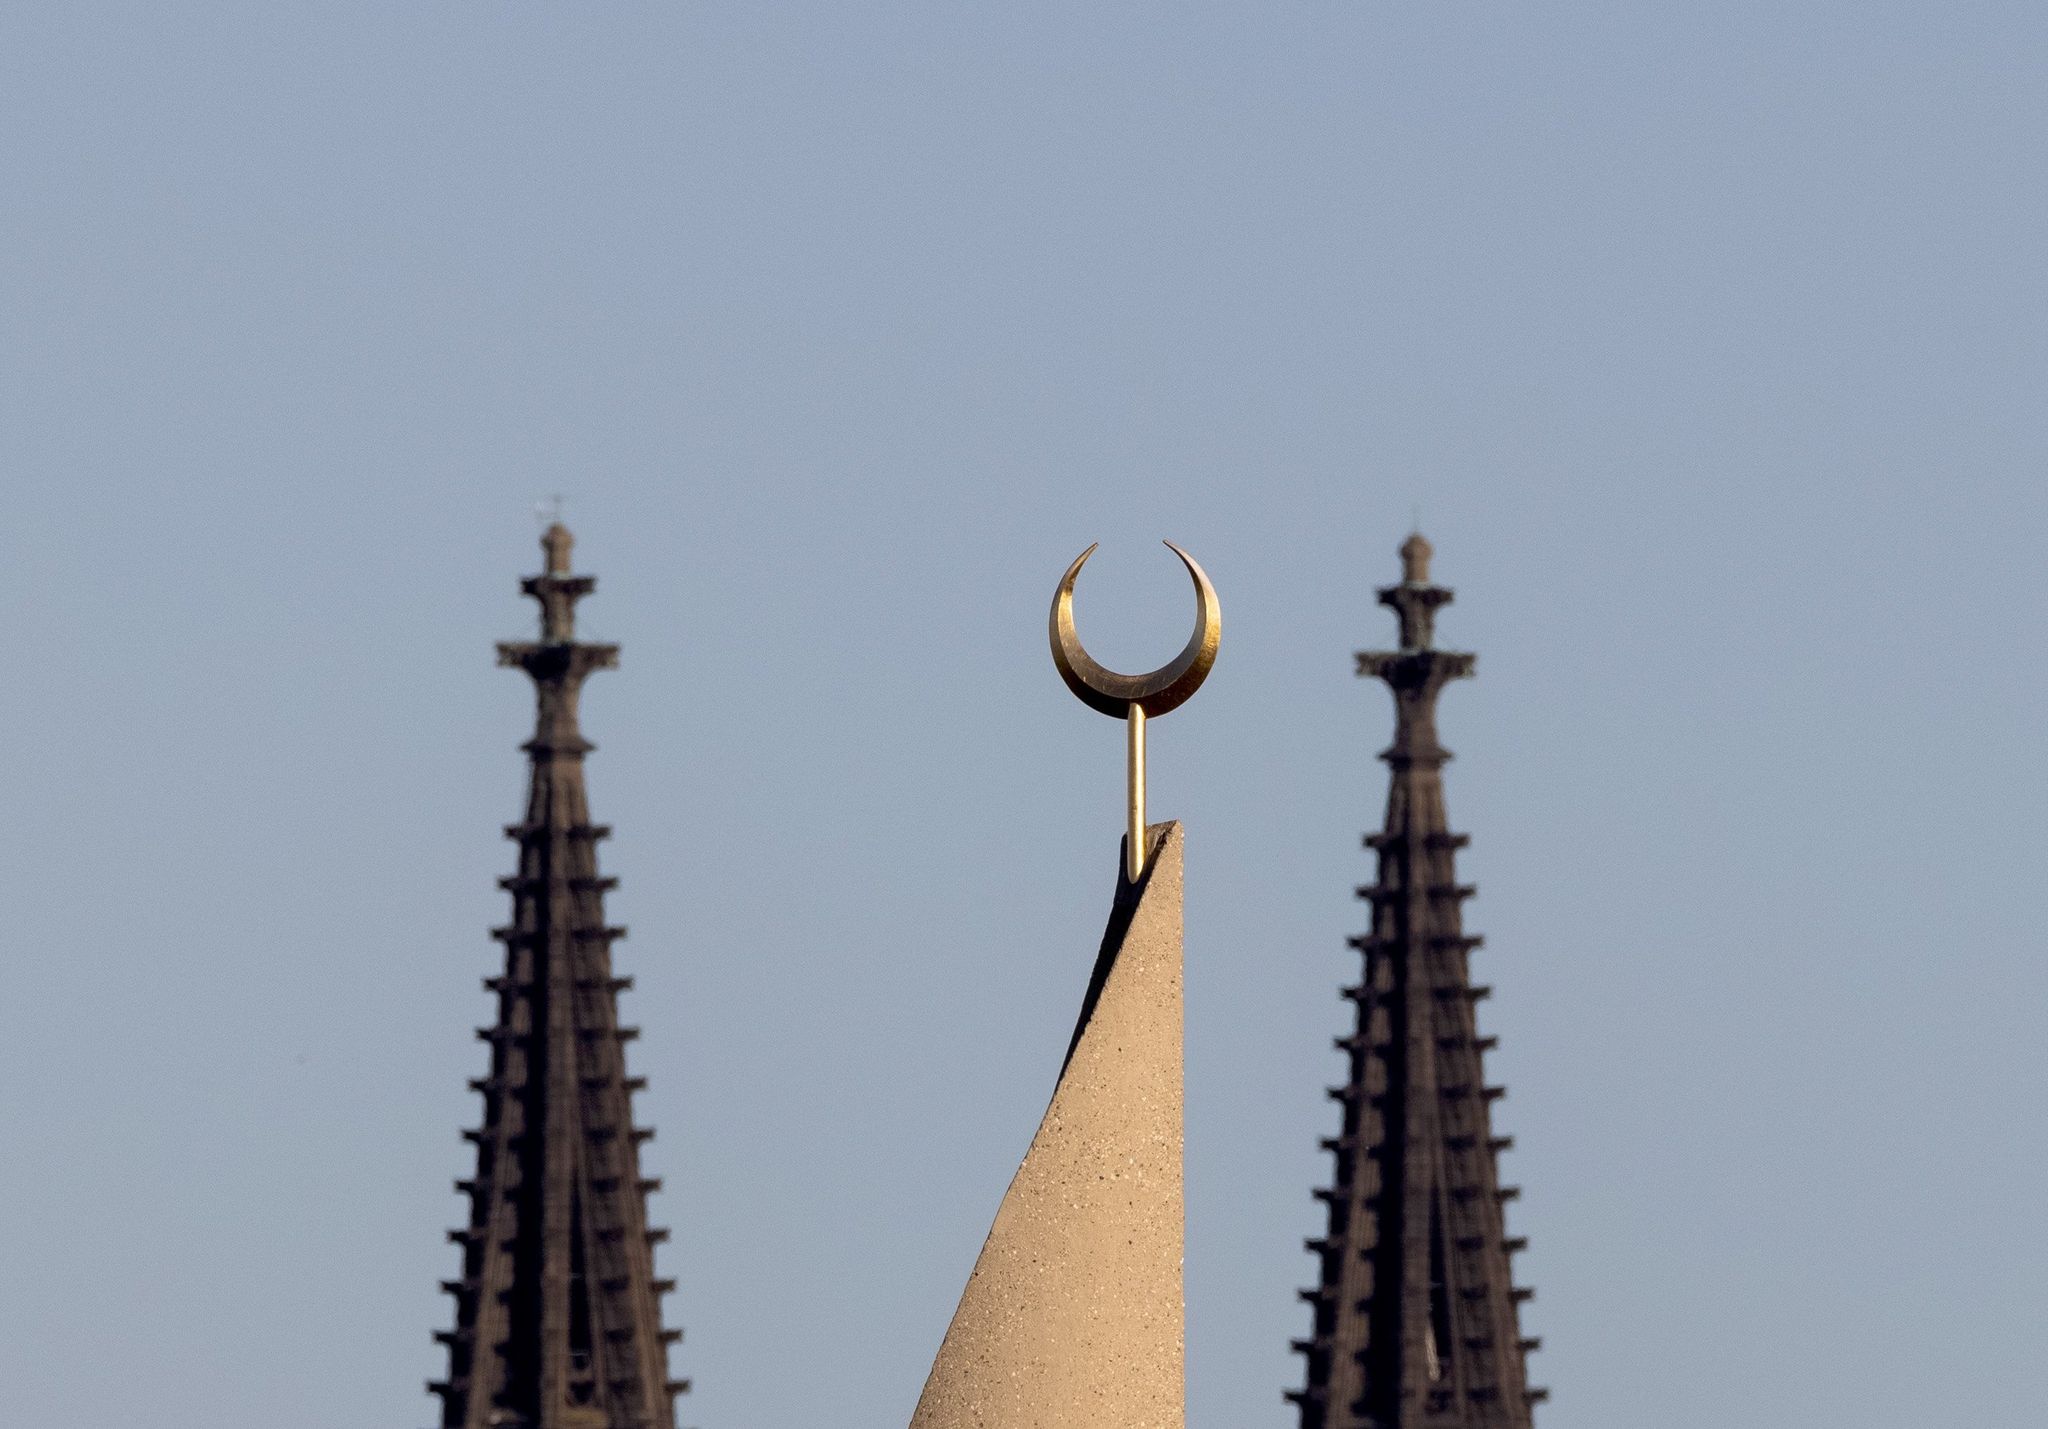 Der Halbmond auf einer Moschee ist zwischen den Türmen des Kölner Doms zu sehen. Der Auftritt eines hochrangigen afghanischen Taliban-Funktionärs in einer Kölner Moschee löst harsche Kritik aus.